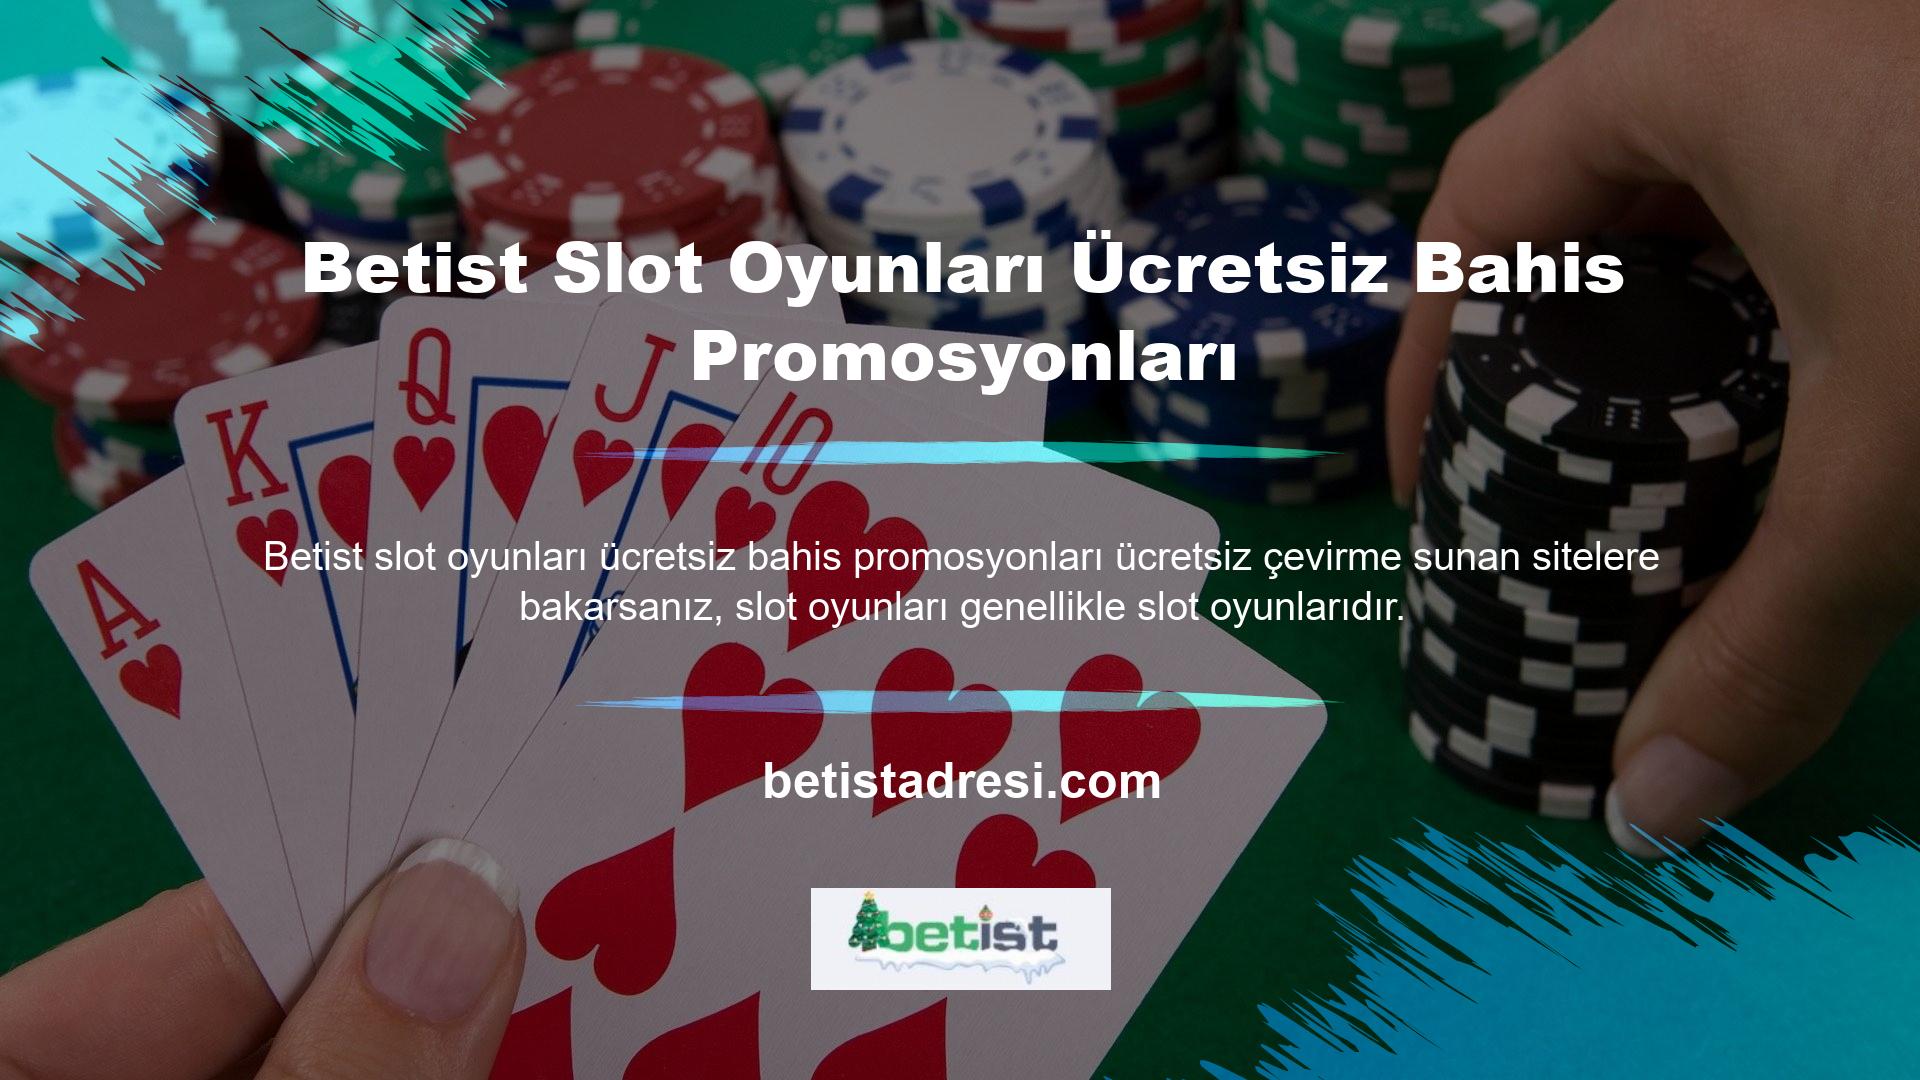 Betist Slot Oyunları oyunu Bedava Bahis Promosyon sitesine taşındı